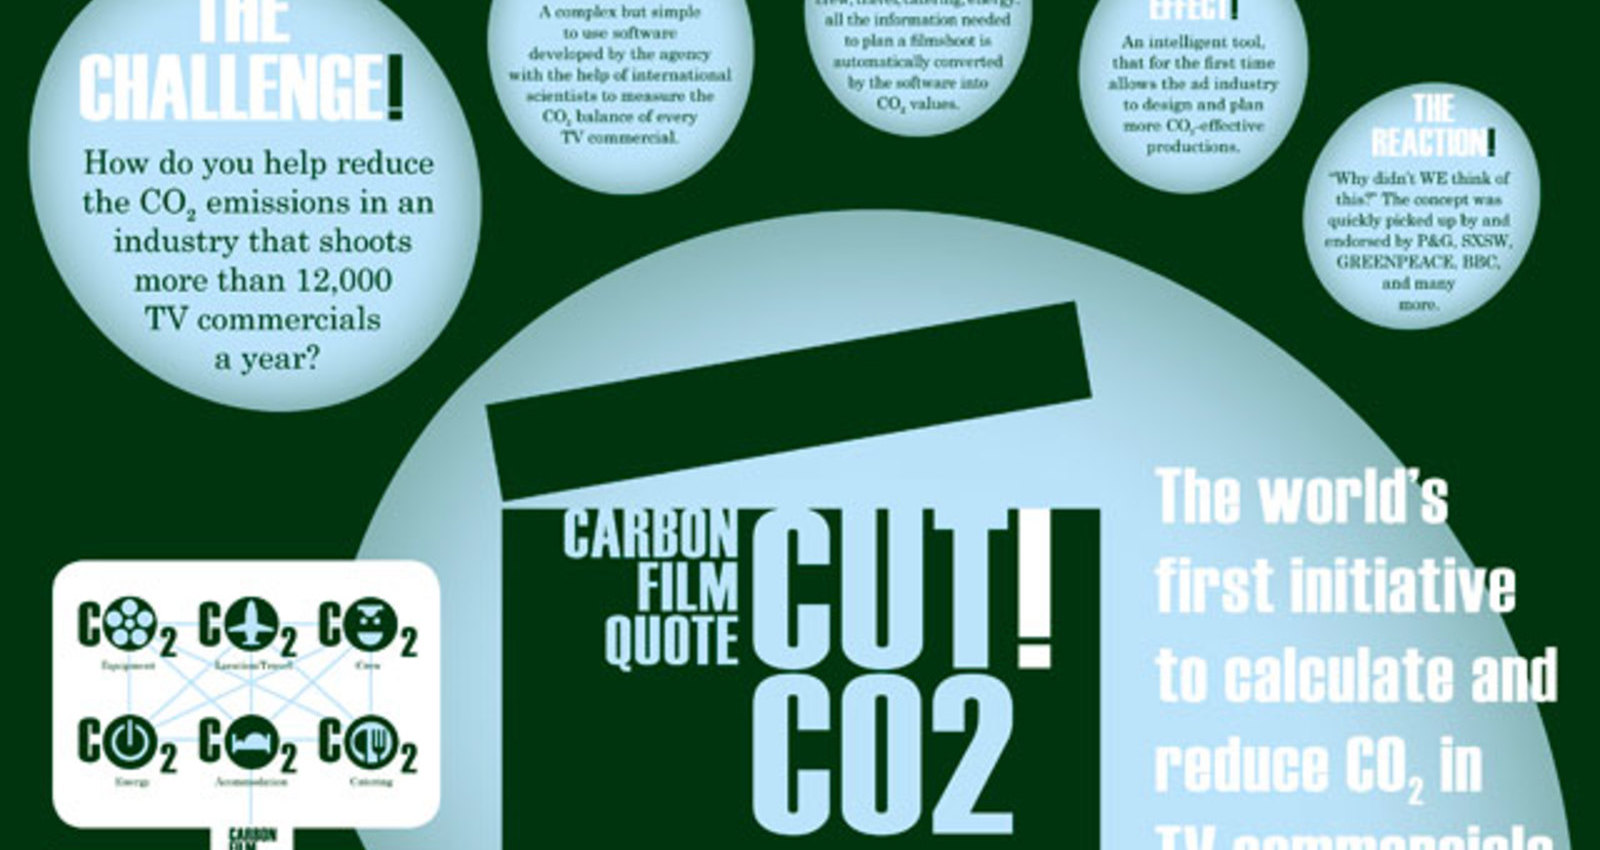 Carbon Film Quote